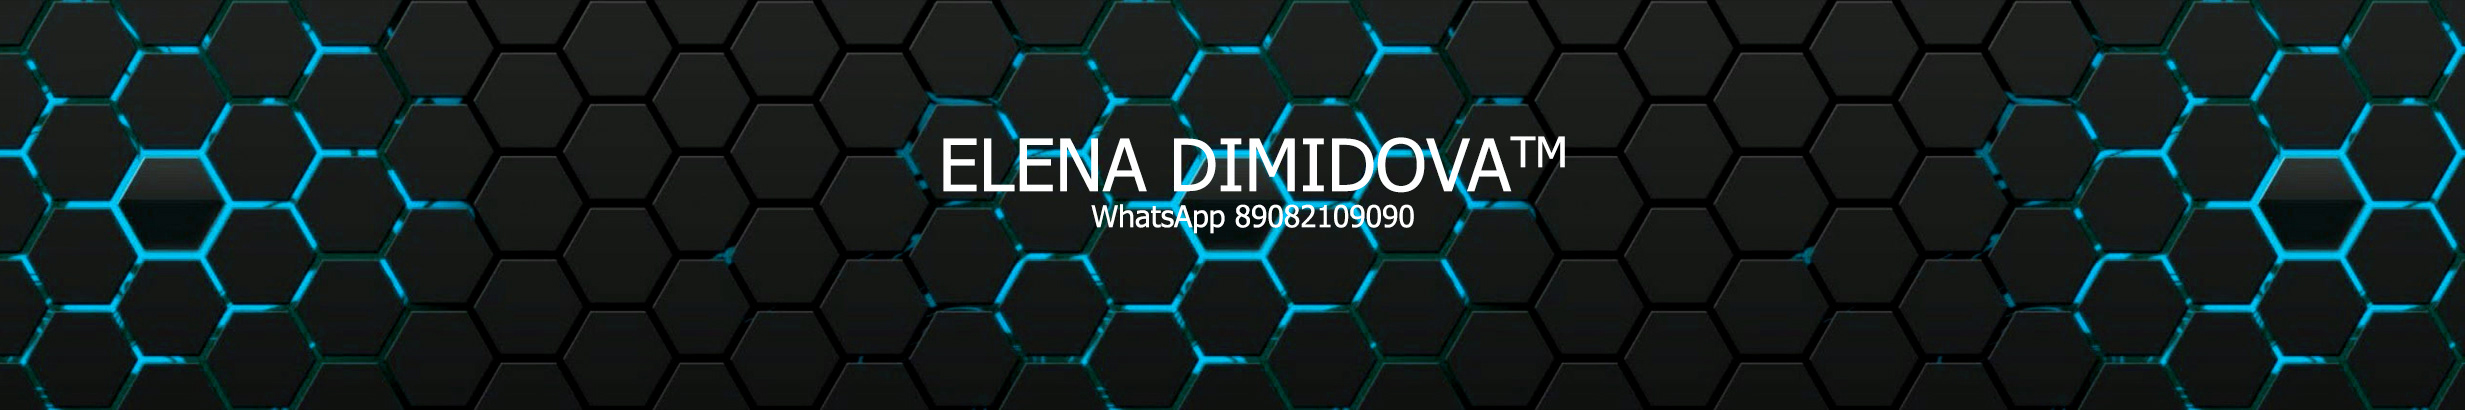 Елена Димидова's profile banner